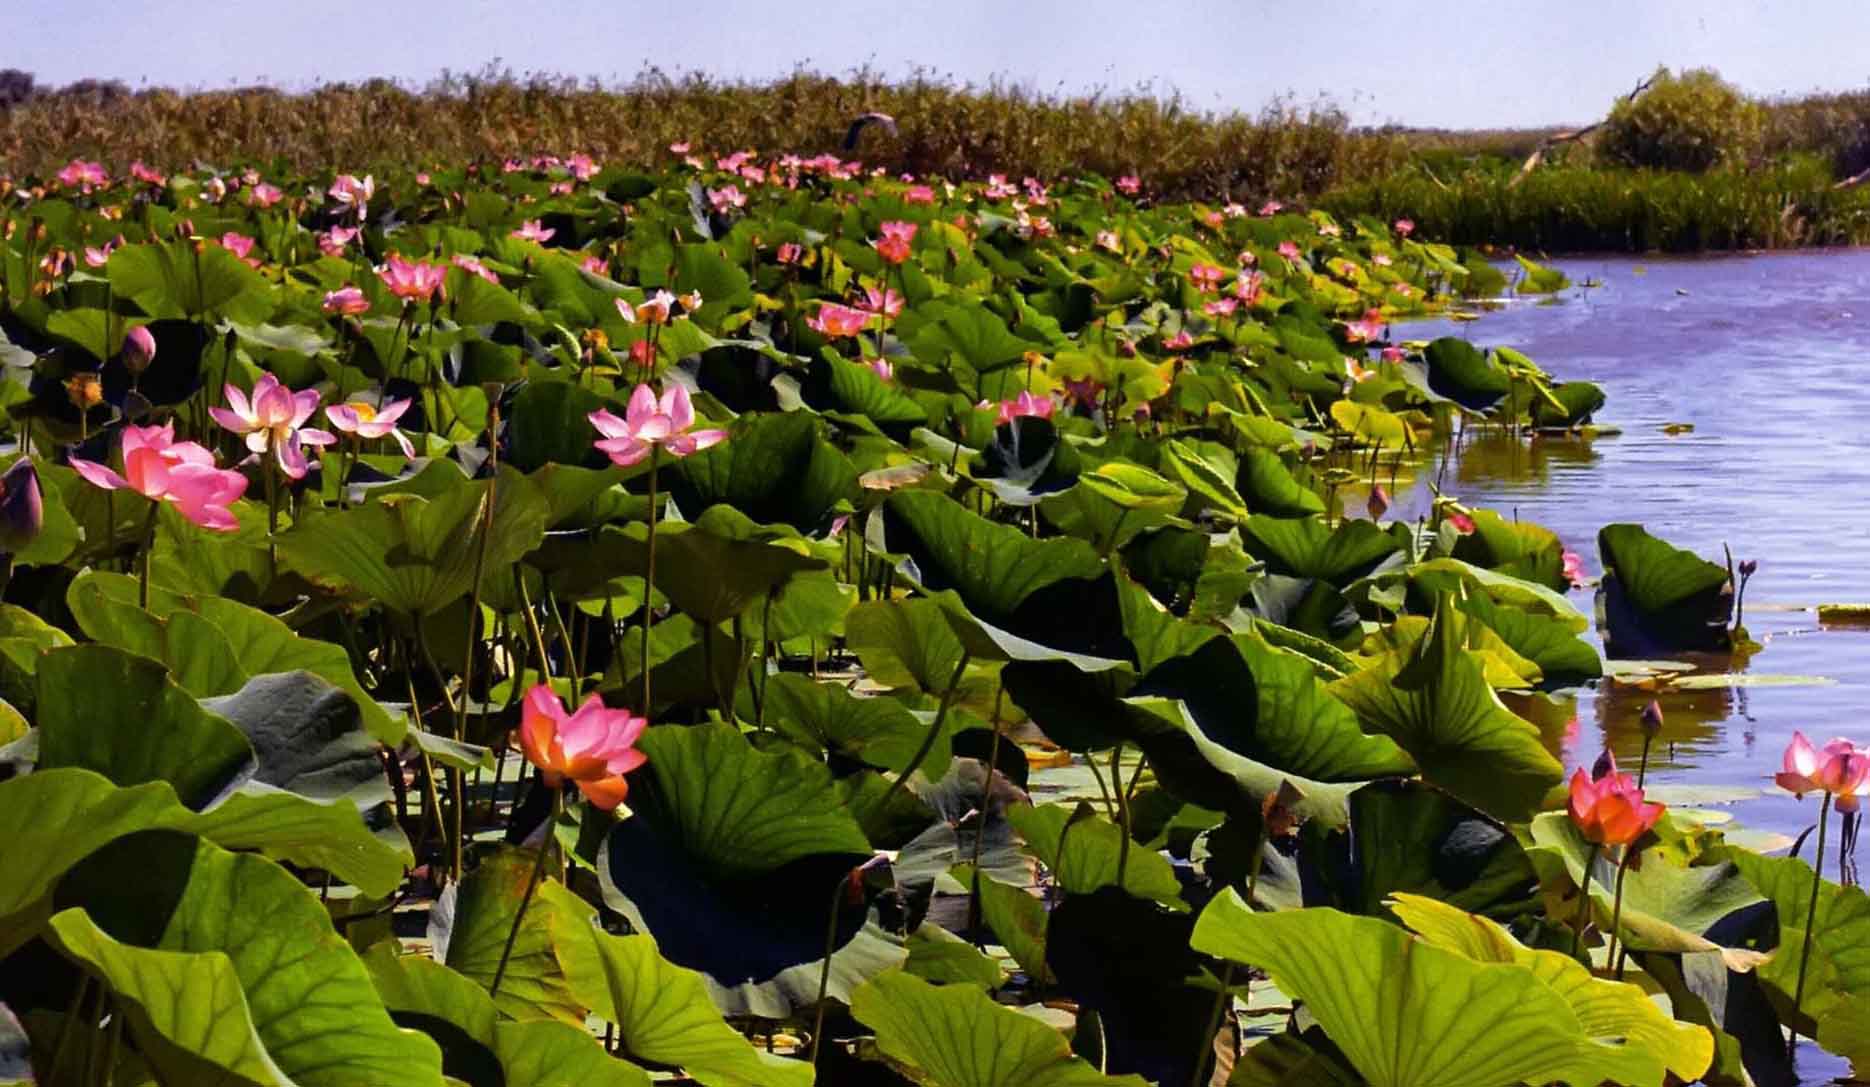 Главное сокровище дельты - лотос, или каспийская роза. Множество туристов стремится сюда ради этого необычайного зрелища - целых водных полей нежно-розовых цветов с изумительно тонким ароматом.